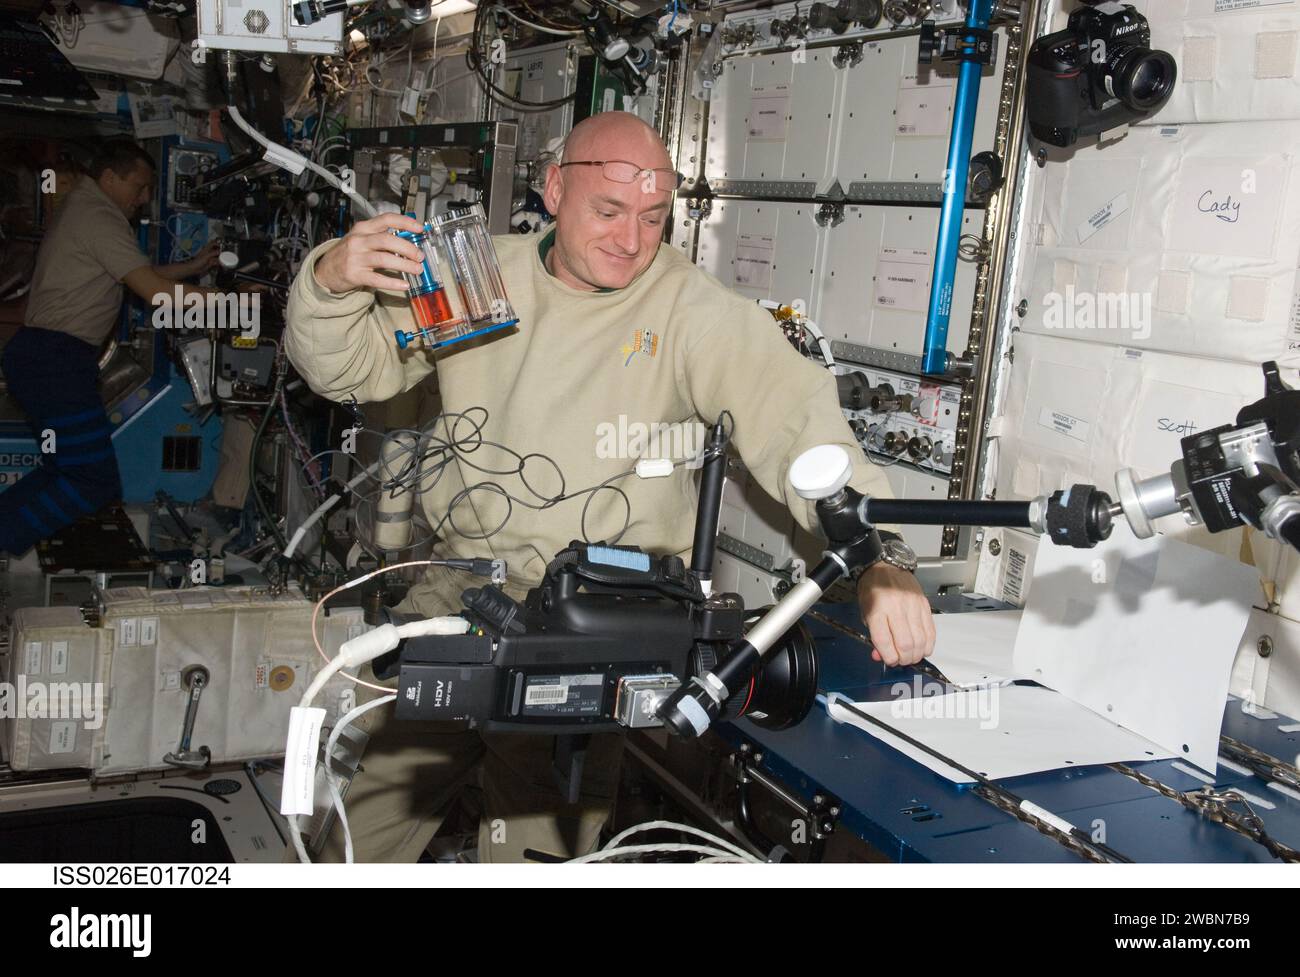 ISS026-E-017024 (11. Januar 2011) --- NASA-Astronaut Scott Kelly, Kommandant der Expedition 26, arbeitet am Hardware-Setup für ein kapillares Strömungsexperiment (CFE) Vane Gap-1 Experiment. Der CFE befindet sich auf dem Wartungsarbeitsbereich im Destiny-Labor der Internationalen Raumstation. CFE beobachtet den Flüssigkeitsfluss, insbesondere Kapillarphänomene, in Schwerelosigkeit. Stockfoto